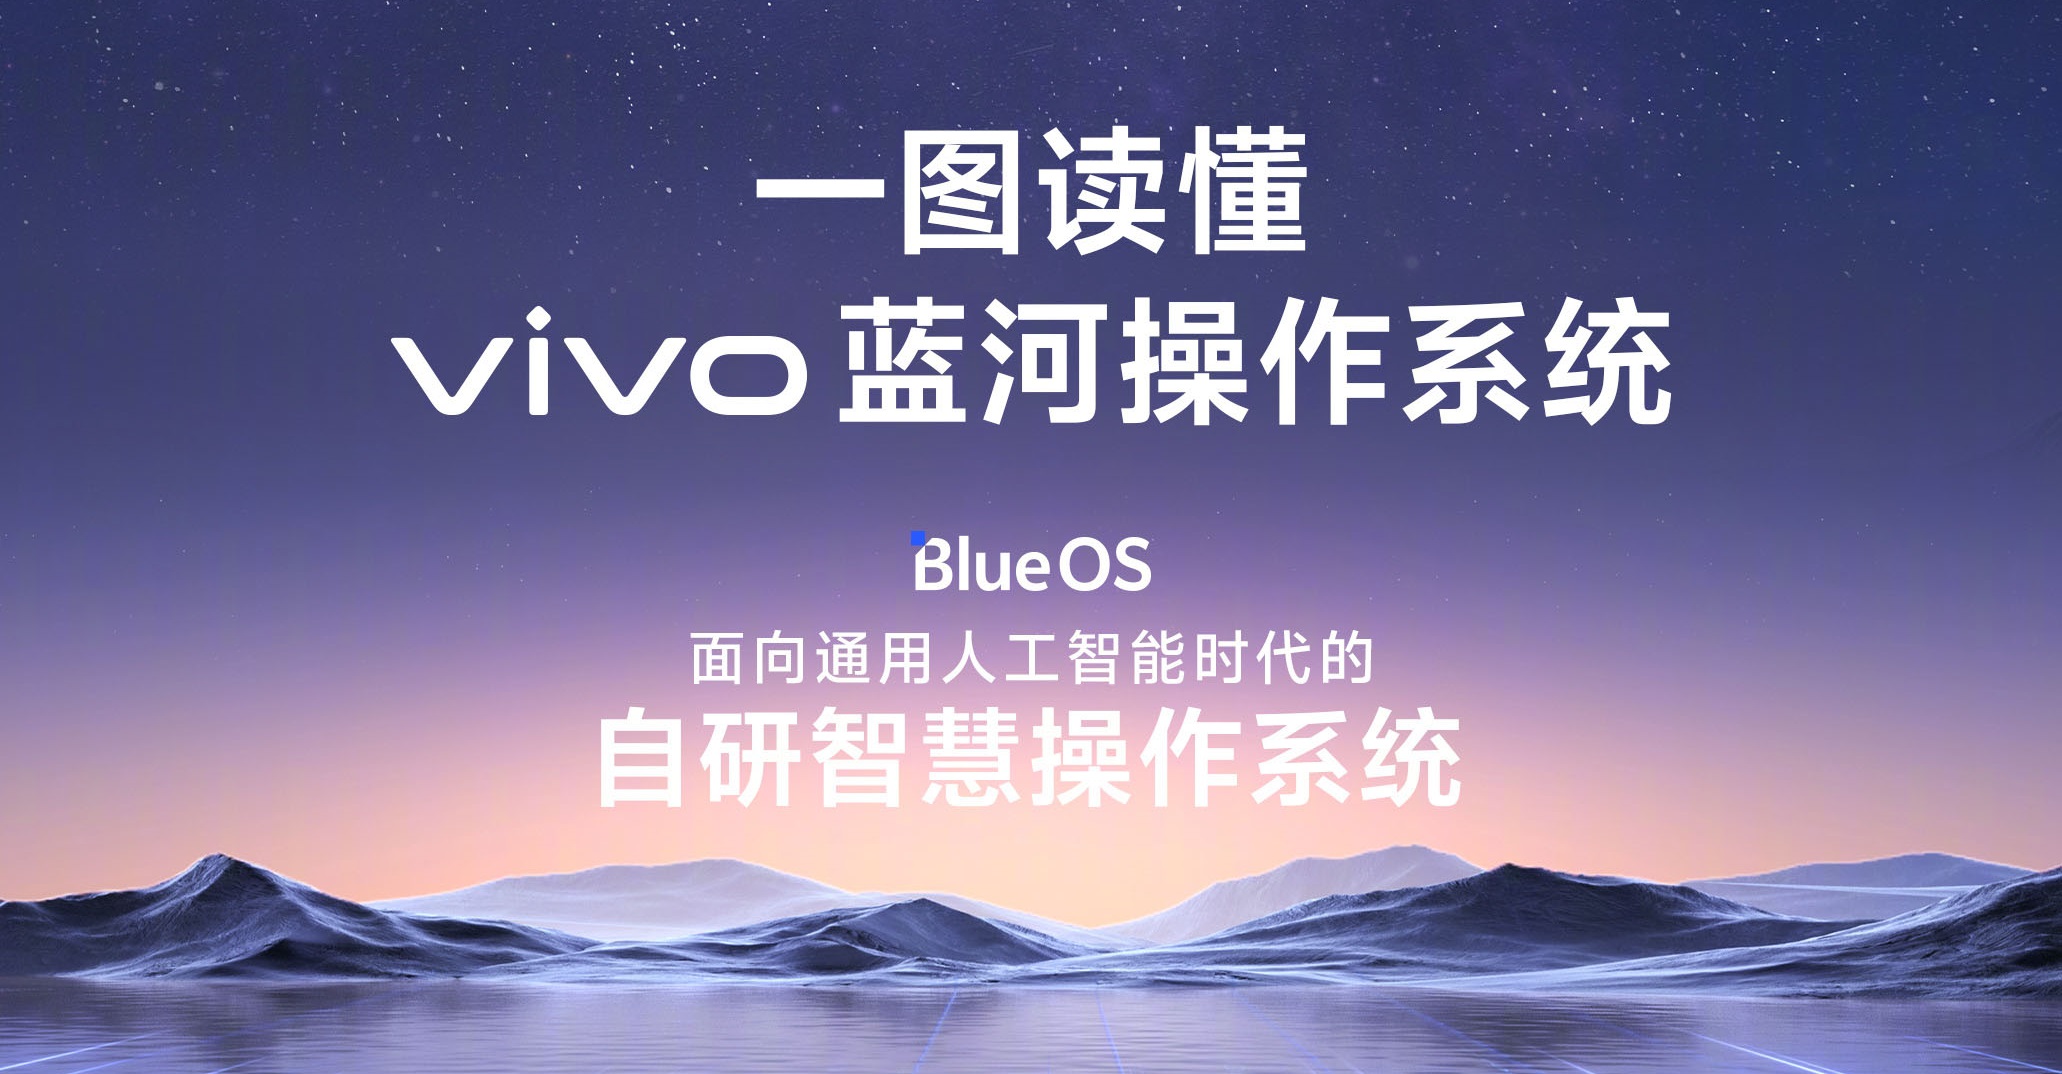 Firma vivo ogłosiła system operacyjny BlueOS oparty na języku programowania Rust w celu wdrożenia wszechobecnej sztucznej inteligencji.